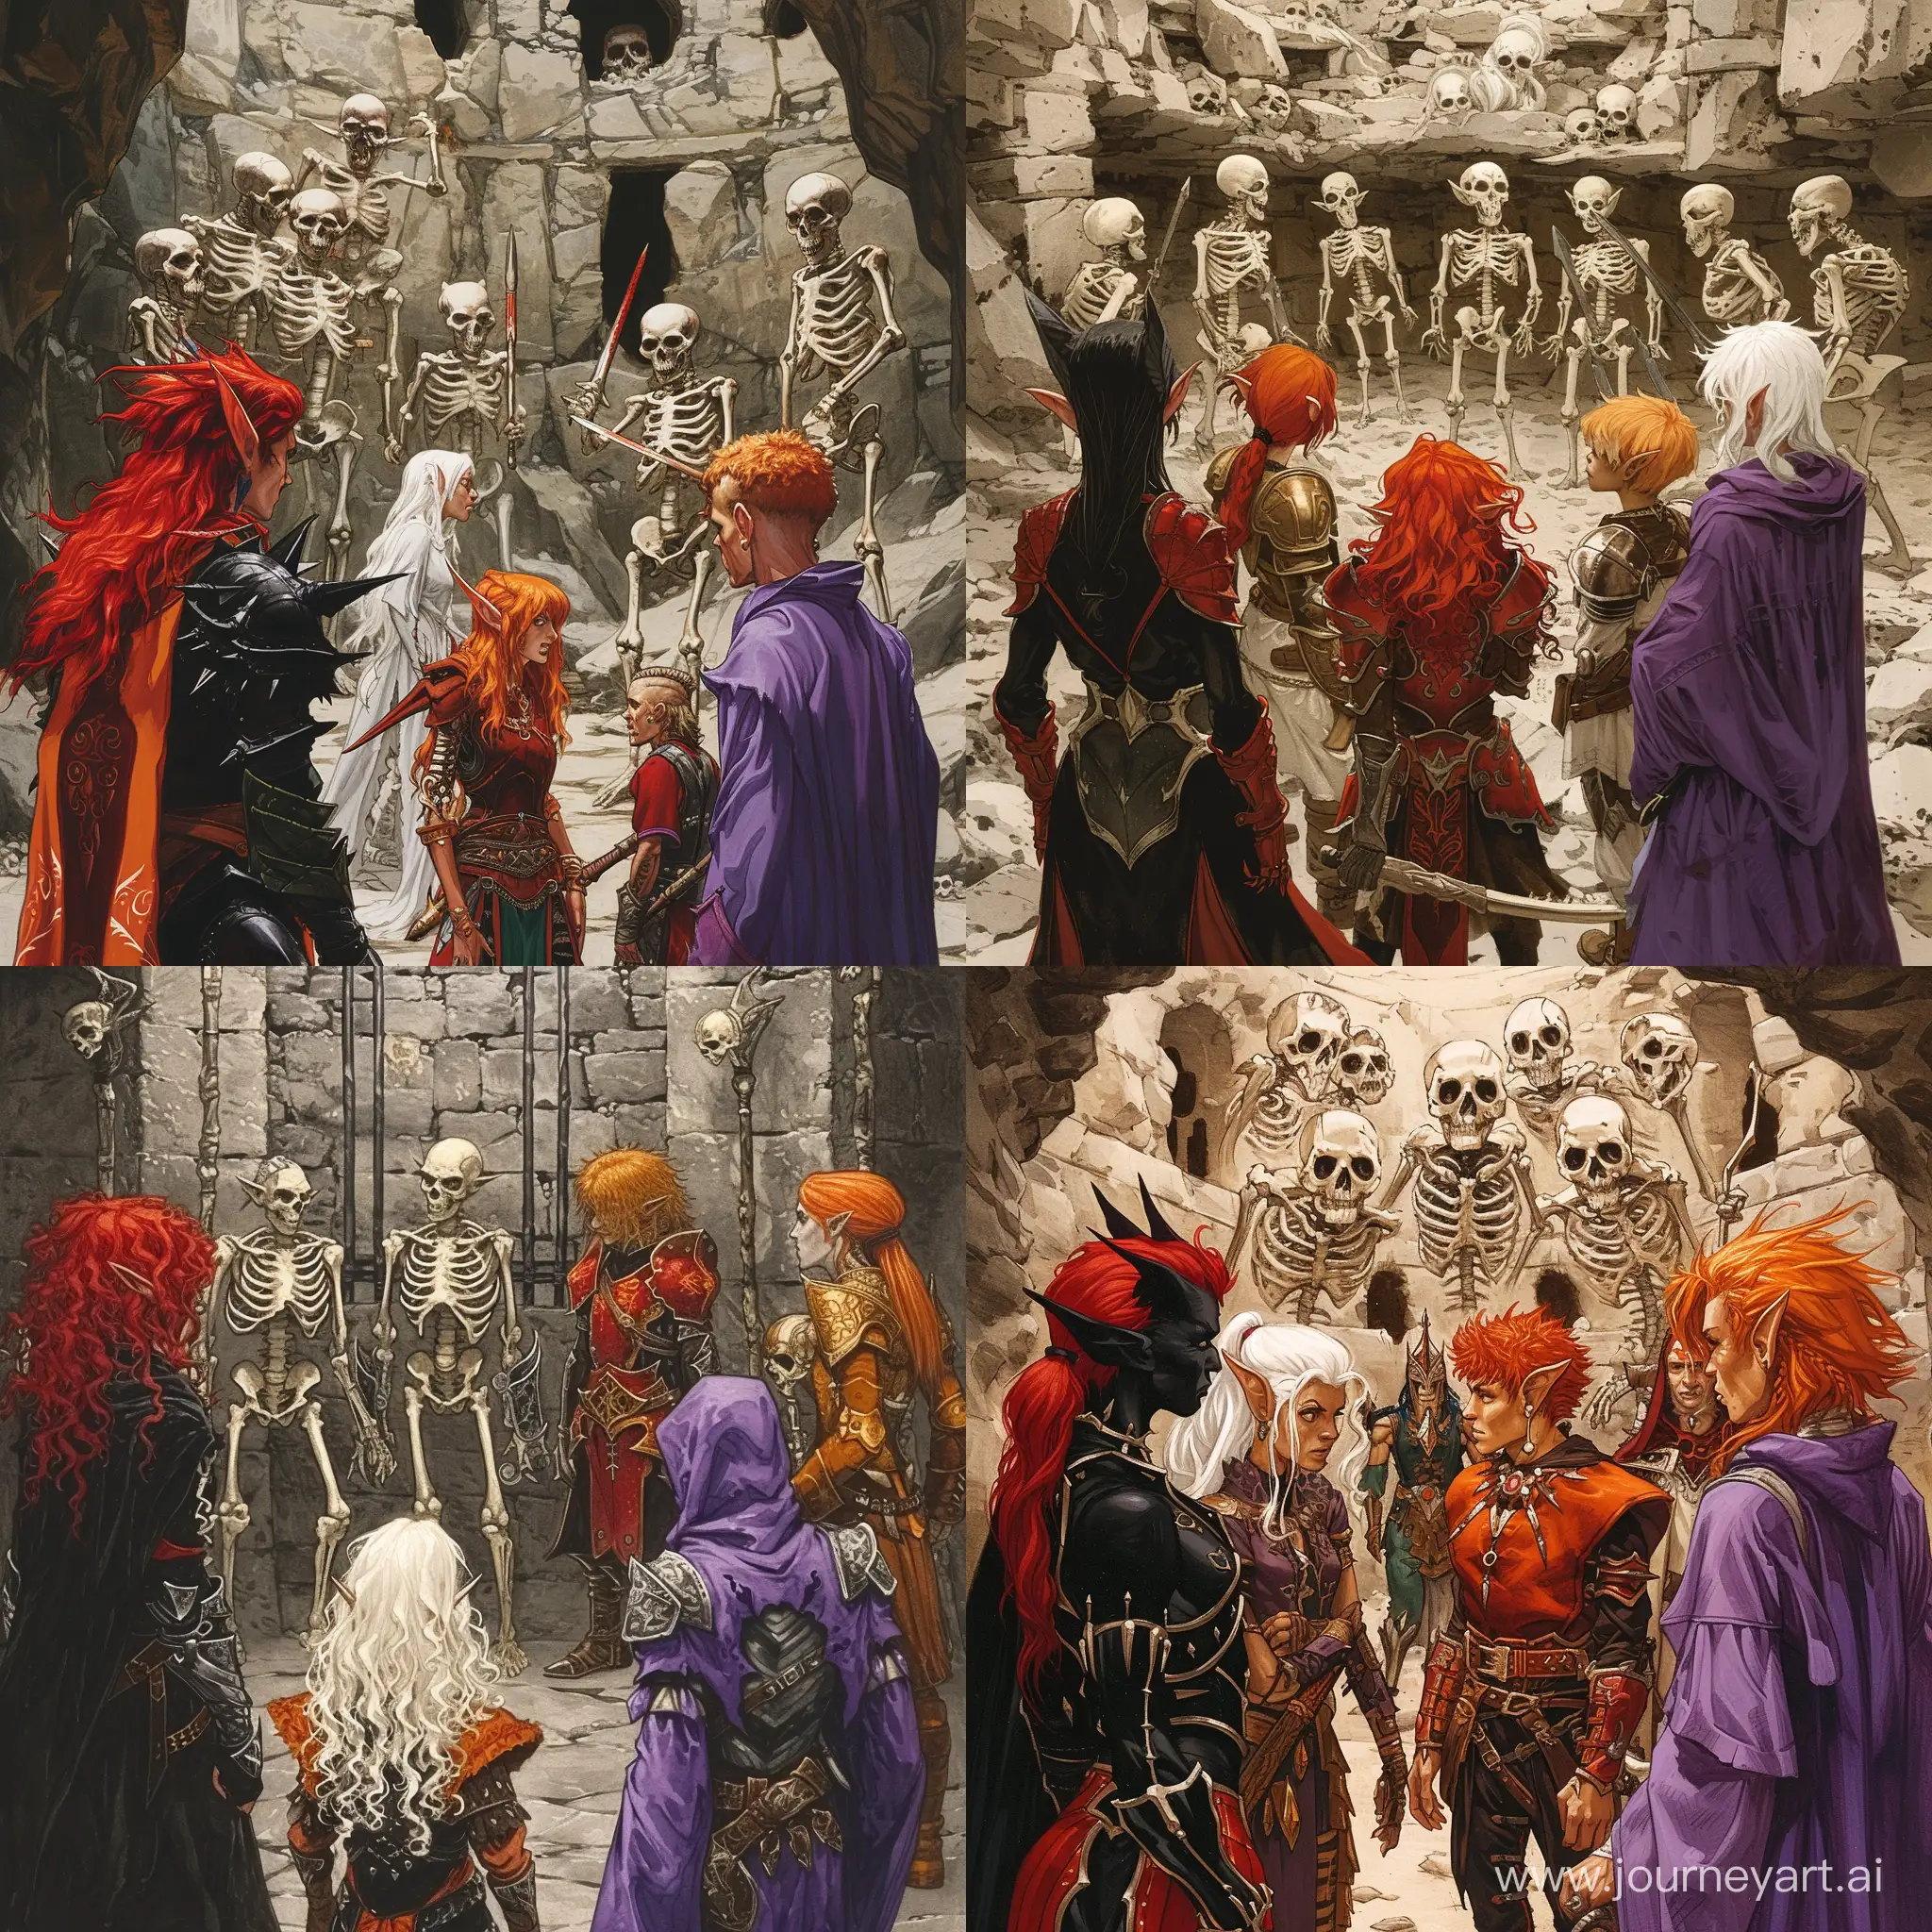 Una elfa de pelo negro y rojo, un elfo de pelo blanco, una elfa de pelo rojo y naranja, una elfa guerrera de pelo rojo, un halfling y un humano con tunica violeta se enfrentan a 7 esqueletos en una sala de tortura